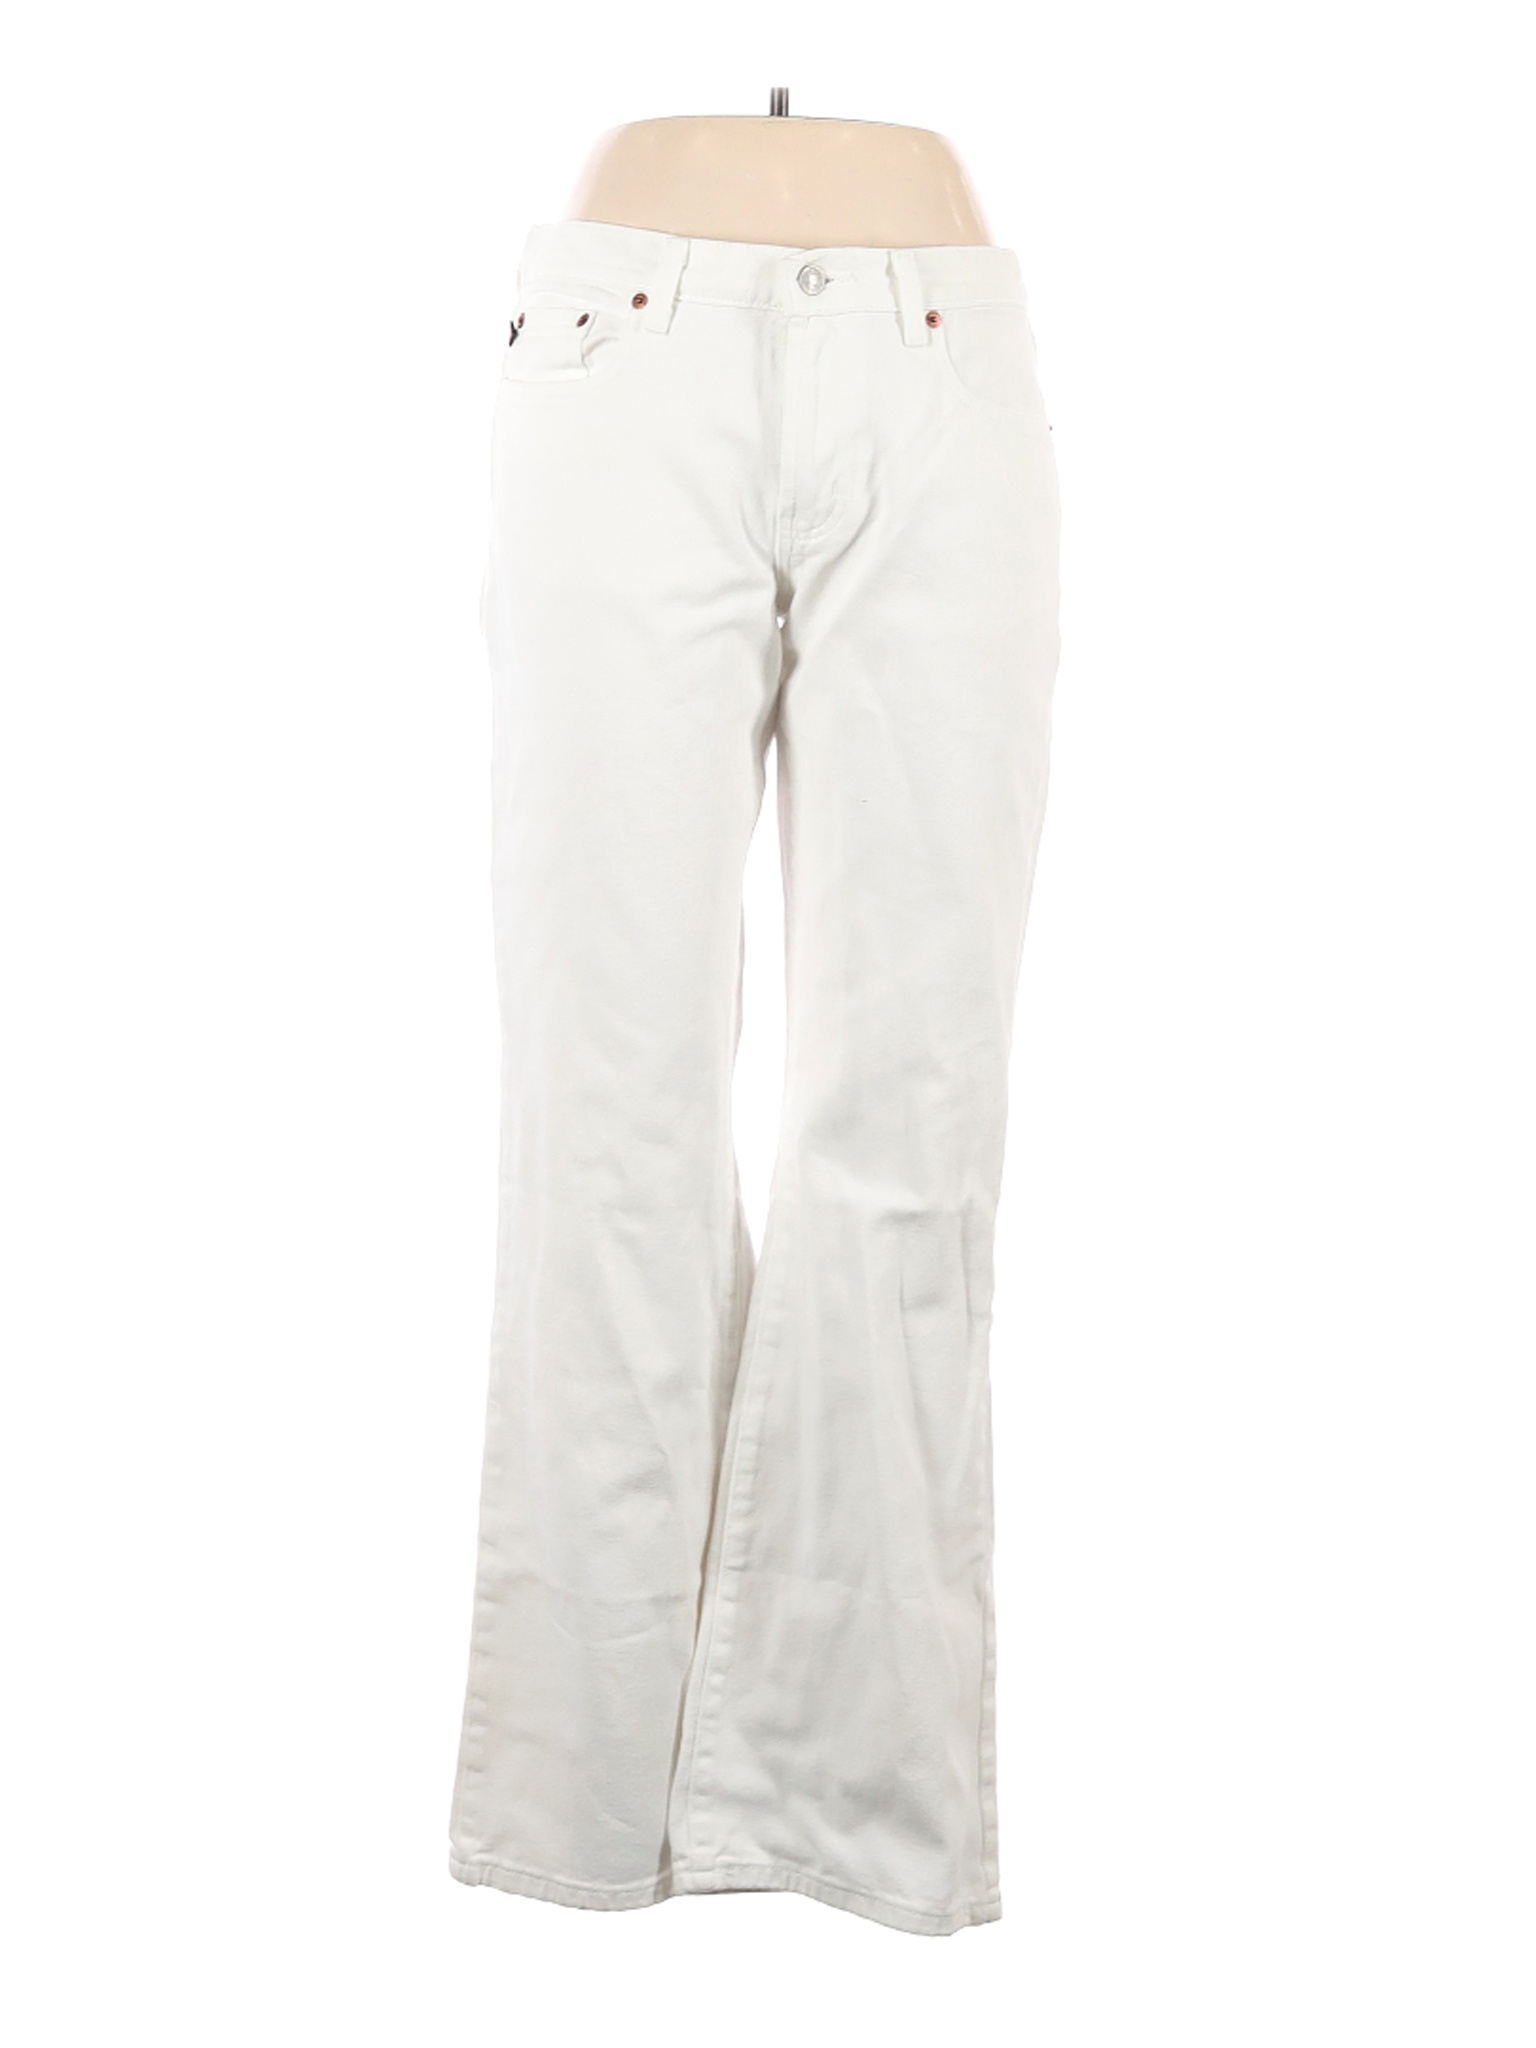 Polo Jeans Co. by Ralph Lauren Women White Jeans 10 | eBay